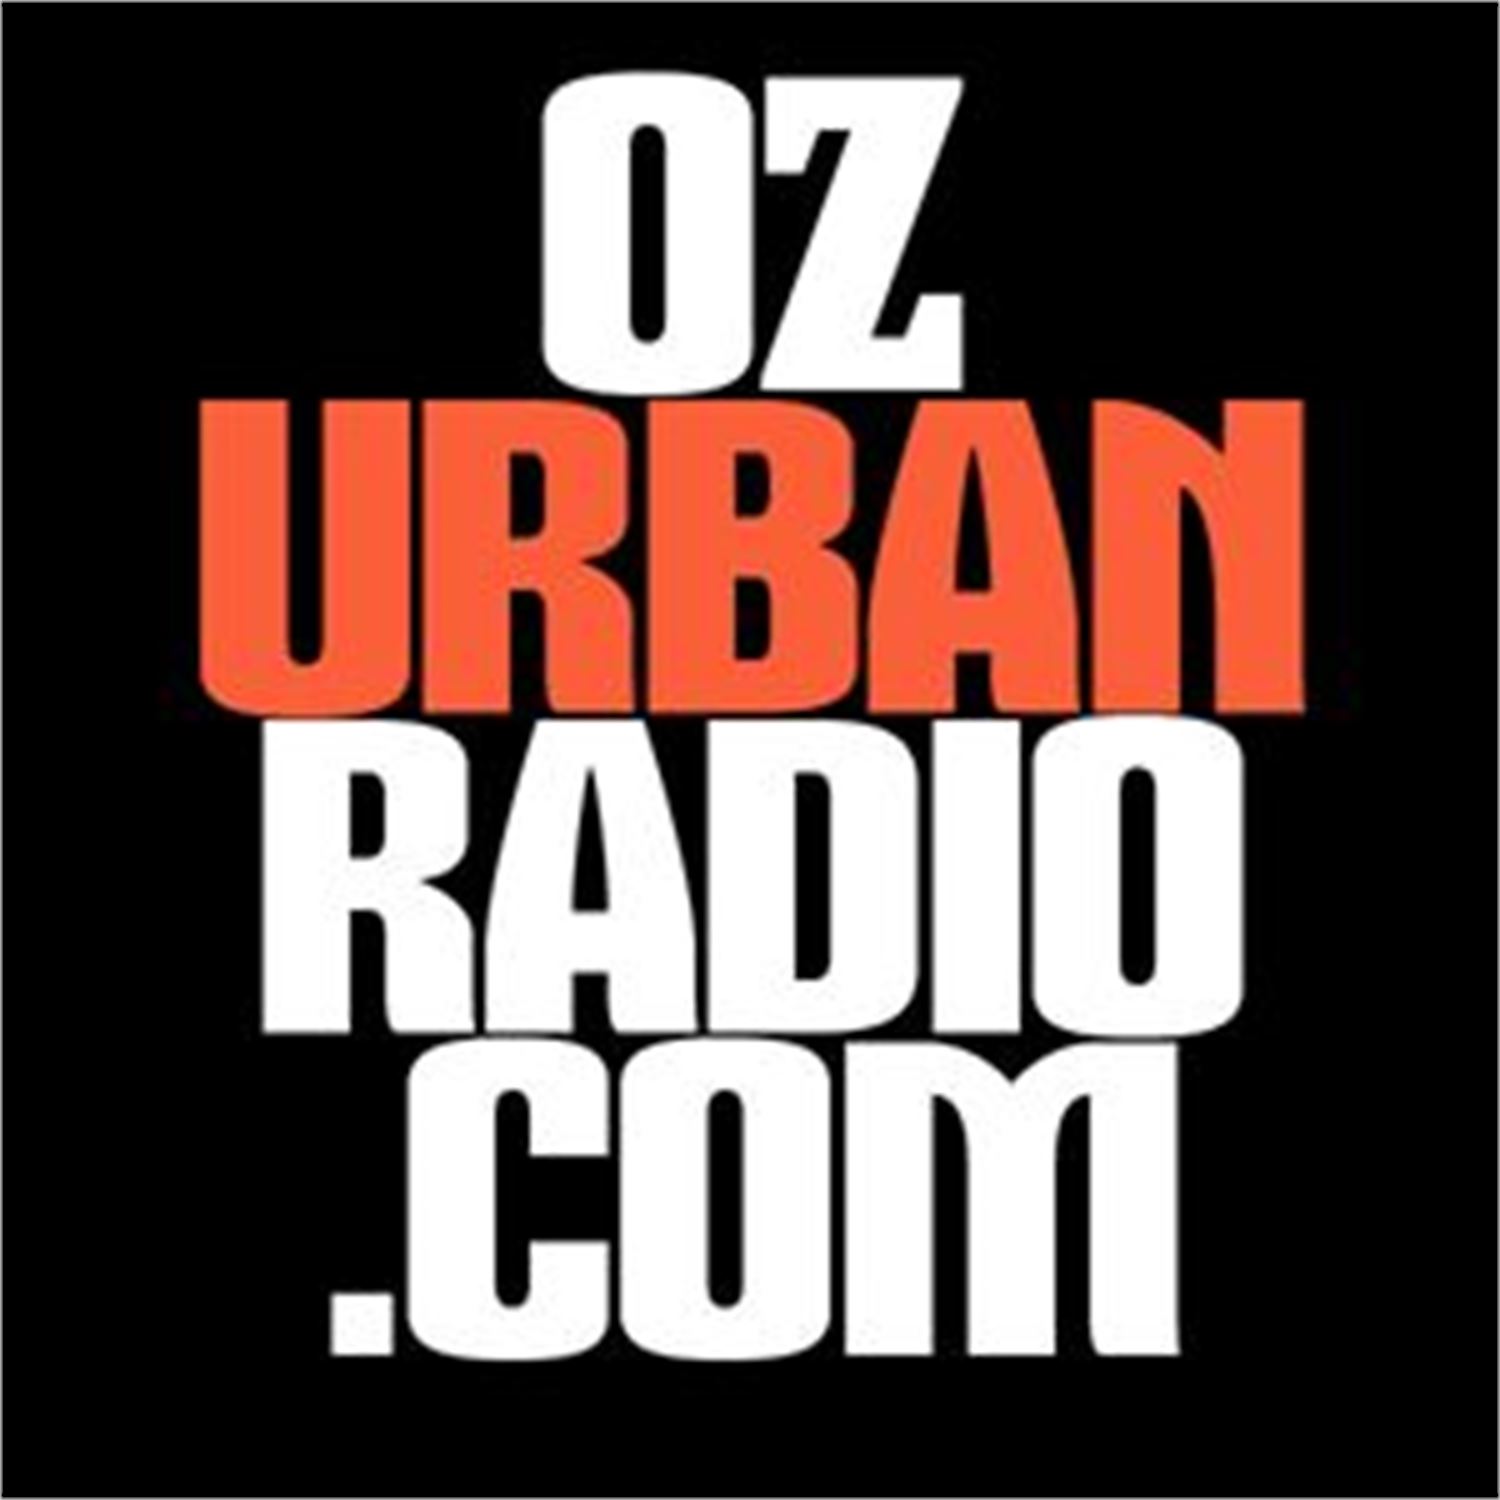 On Demand Feed for Oz Urban Radio